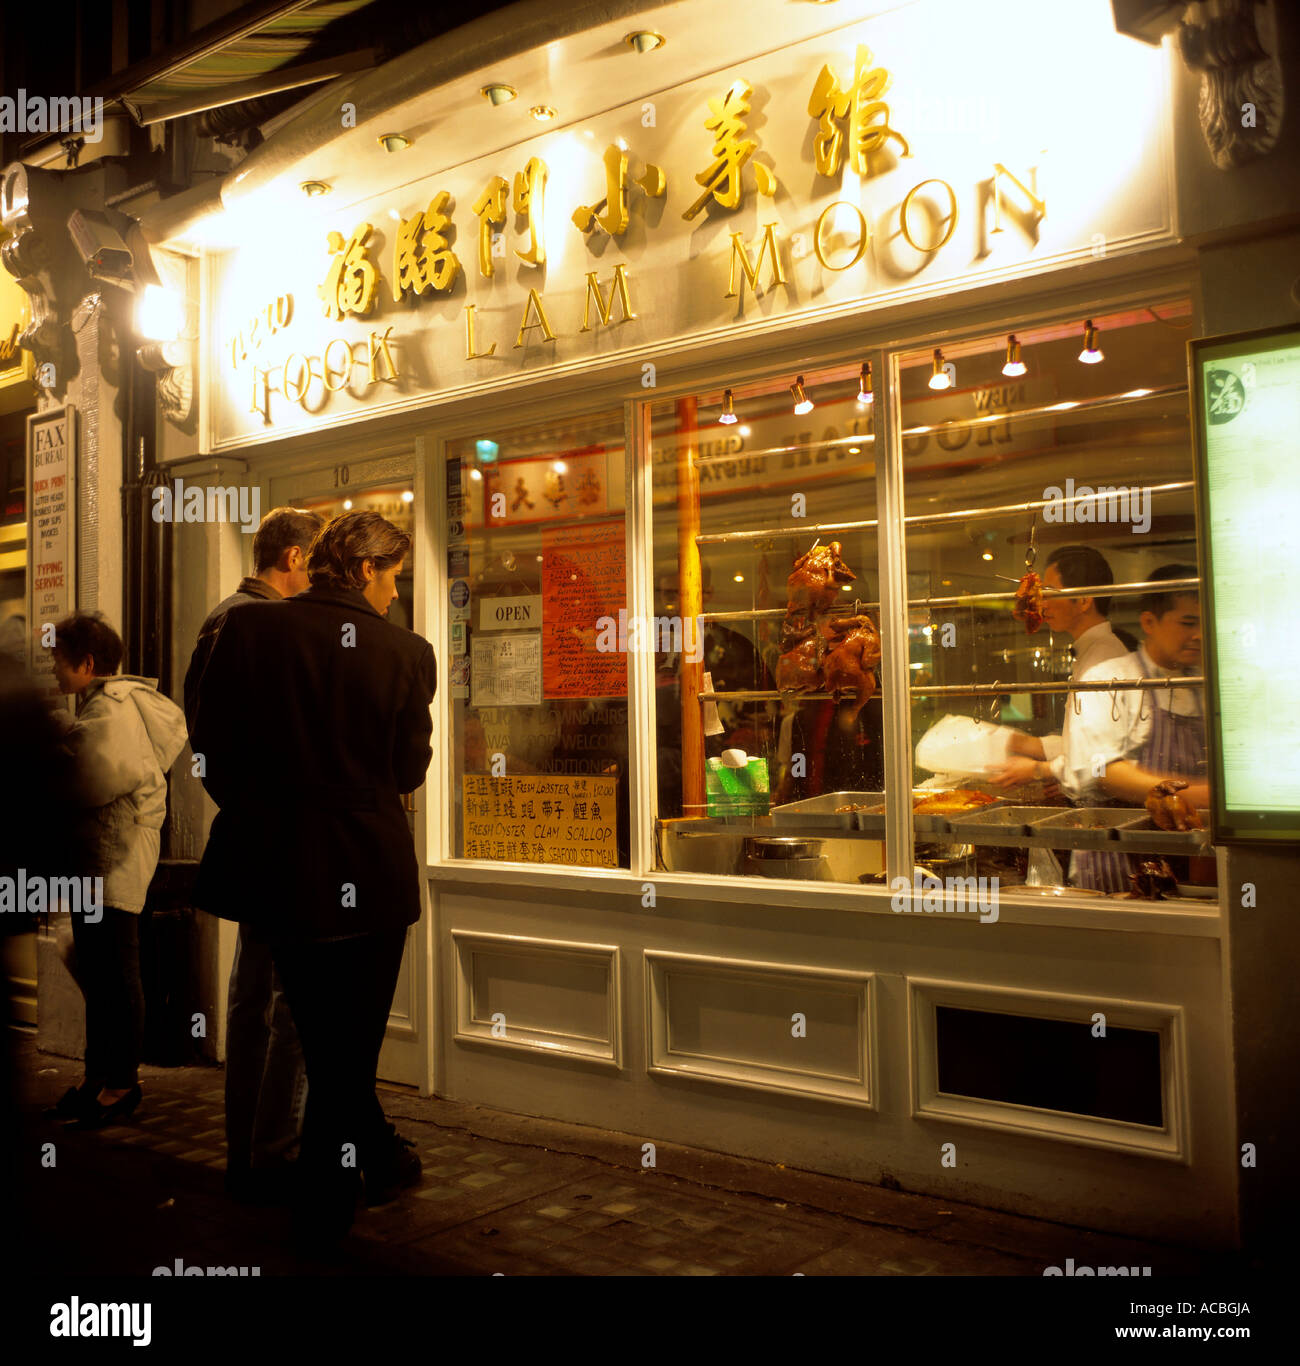 Chinesisches Restaurant am Abend Viertel von Chinatown Londons England Großbritannien redaktionellen Gebrauch Stockfoto